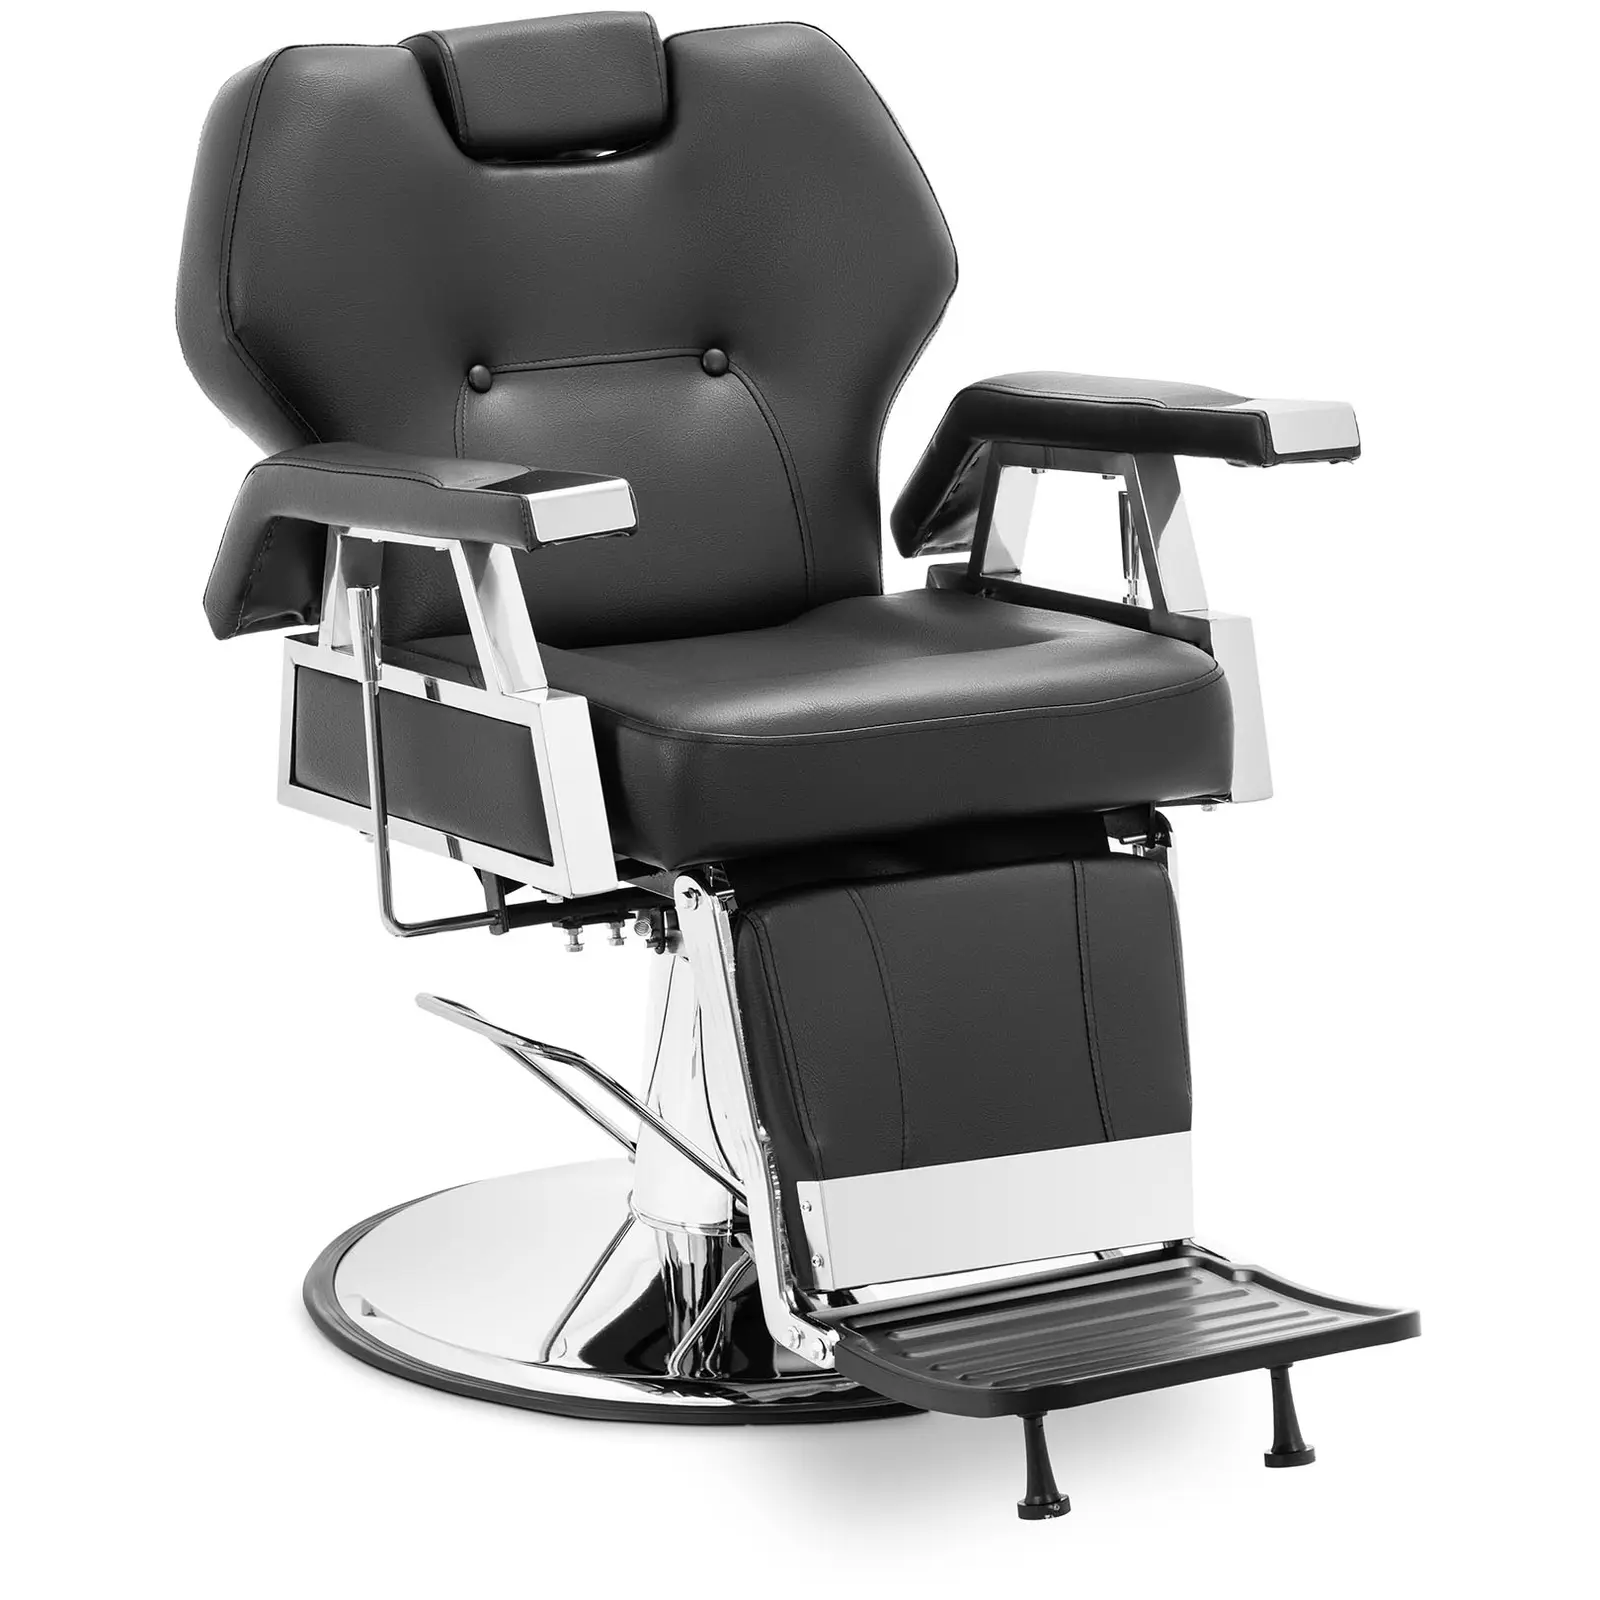 Salono kėdė su kojų atrama - 59 - 69 cm - 150 kg - juoda